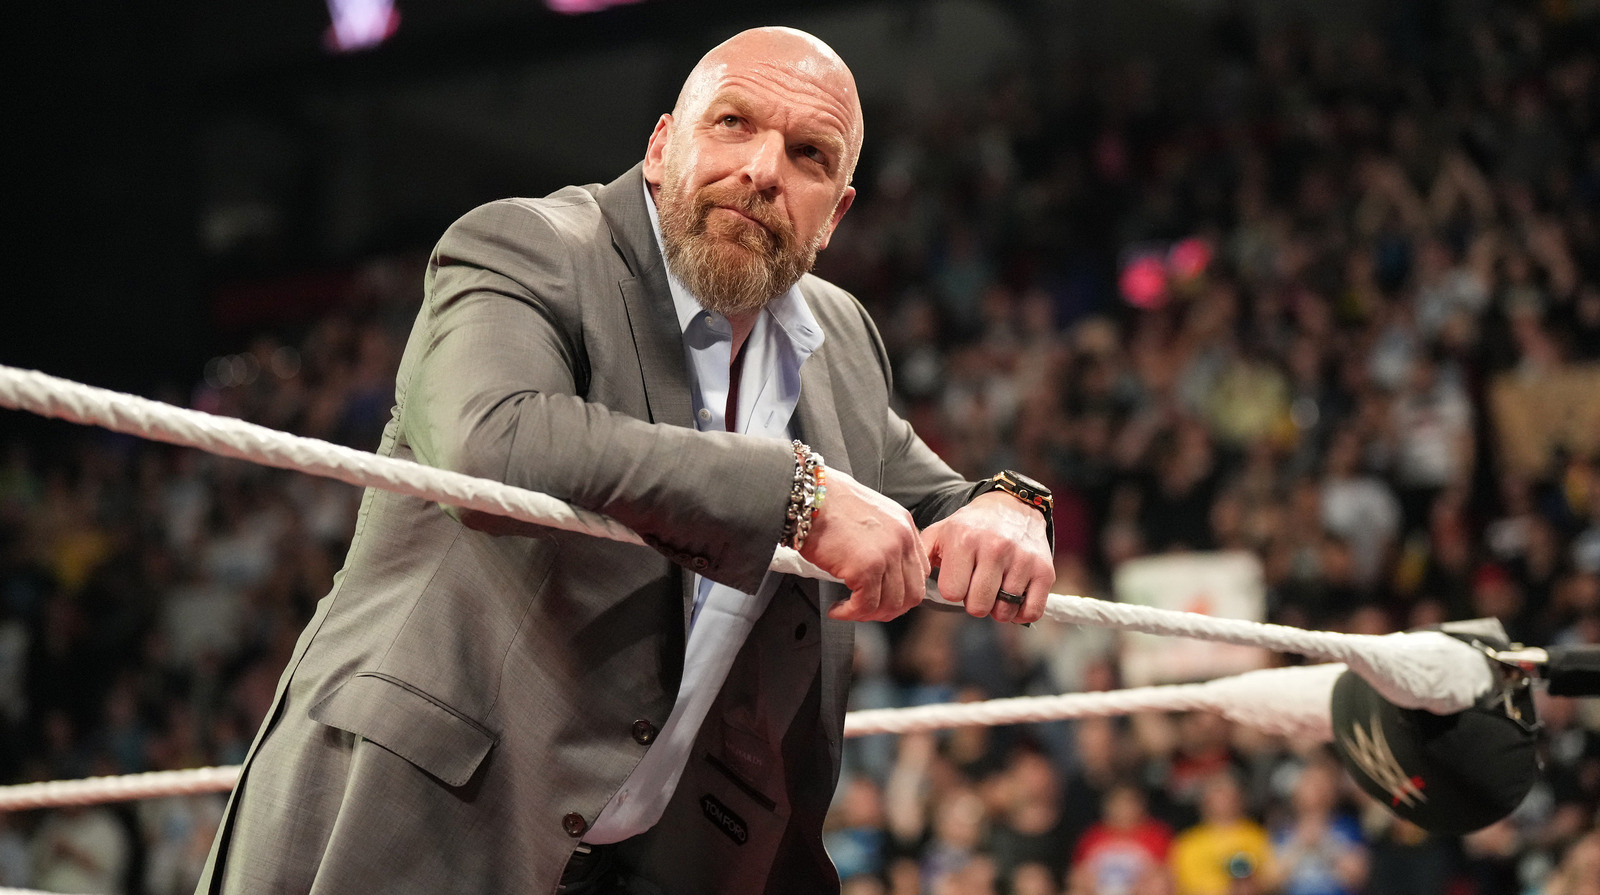 O contrato do ex-campeão da WWE expira em breve